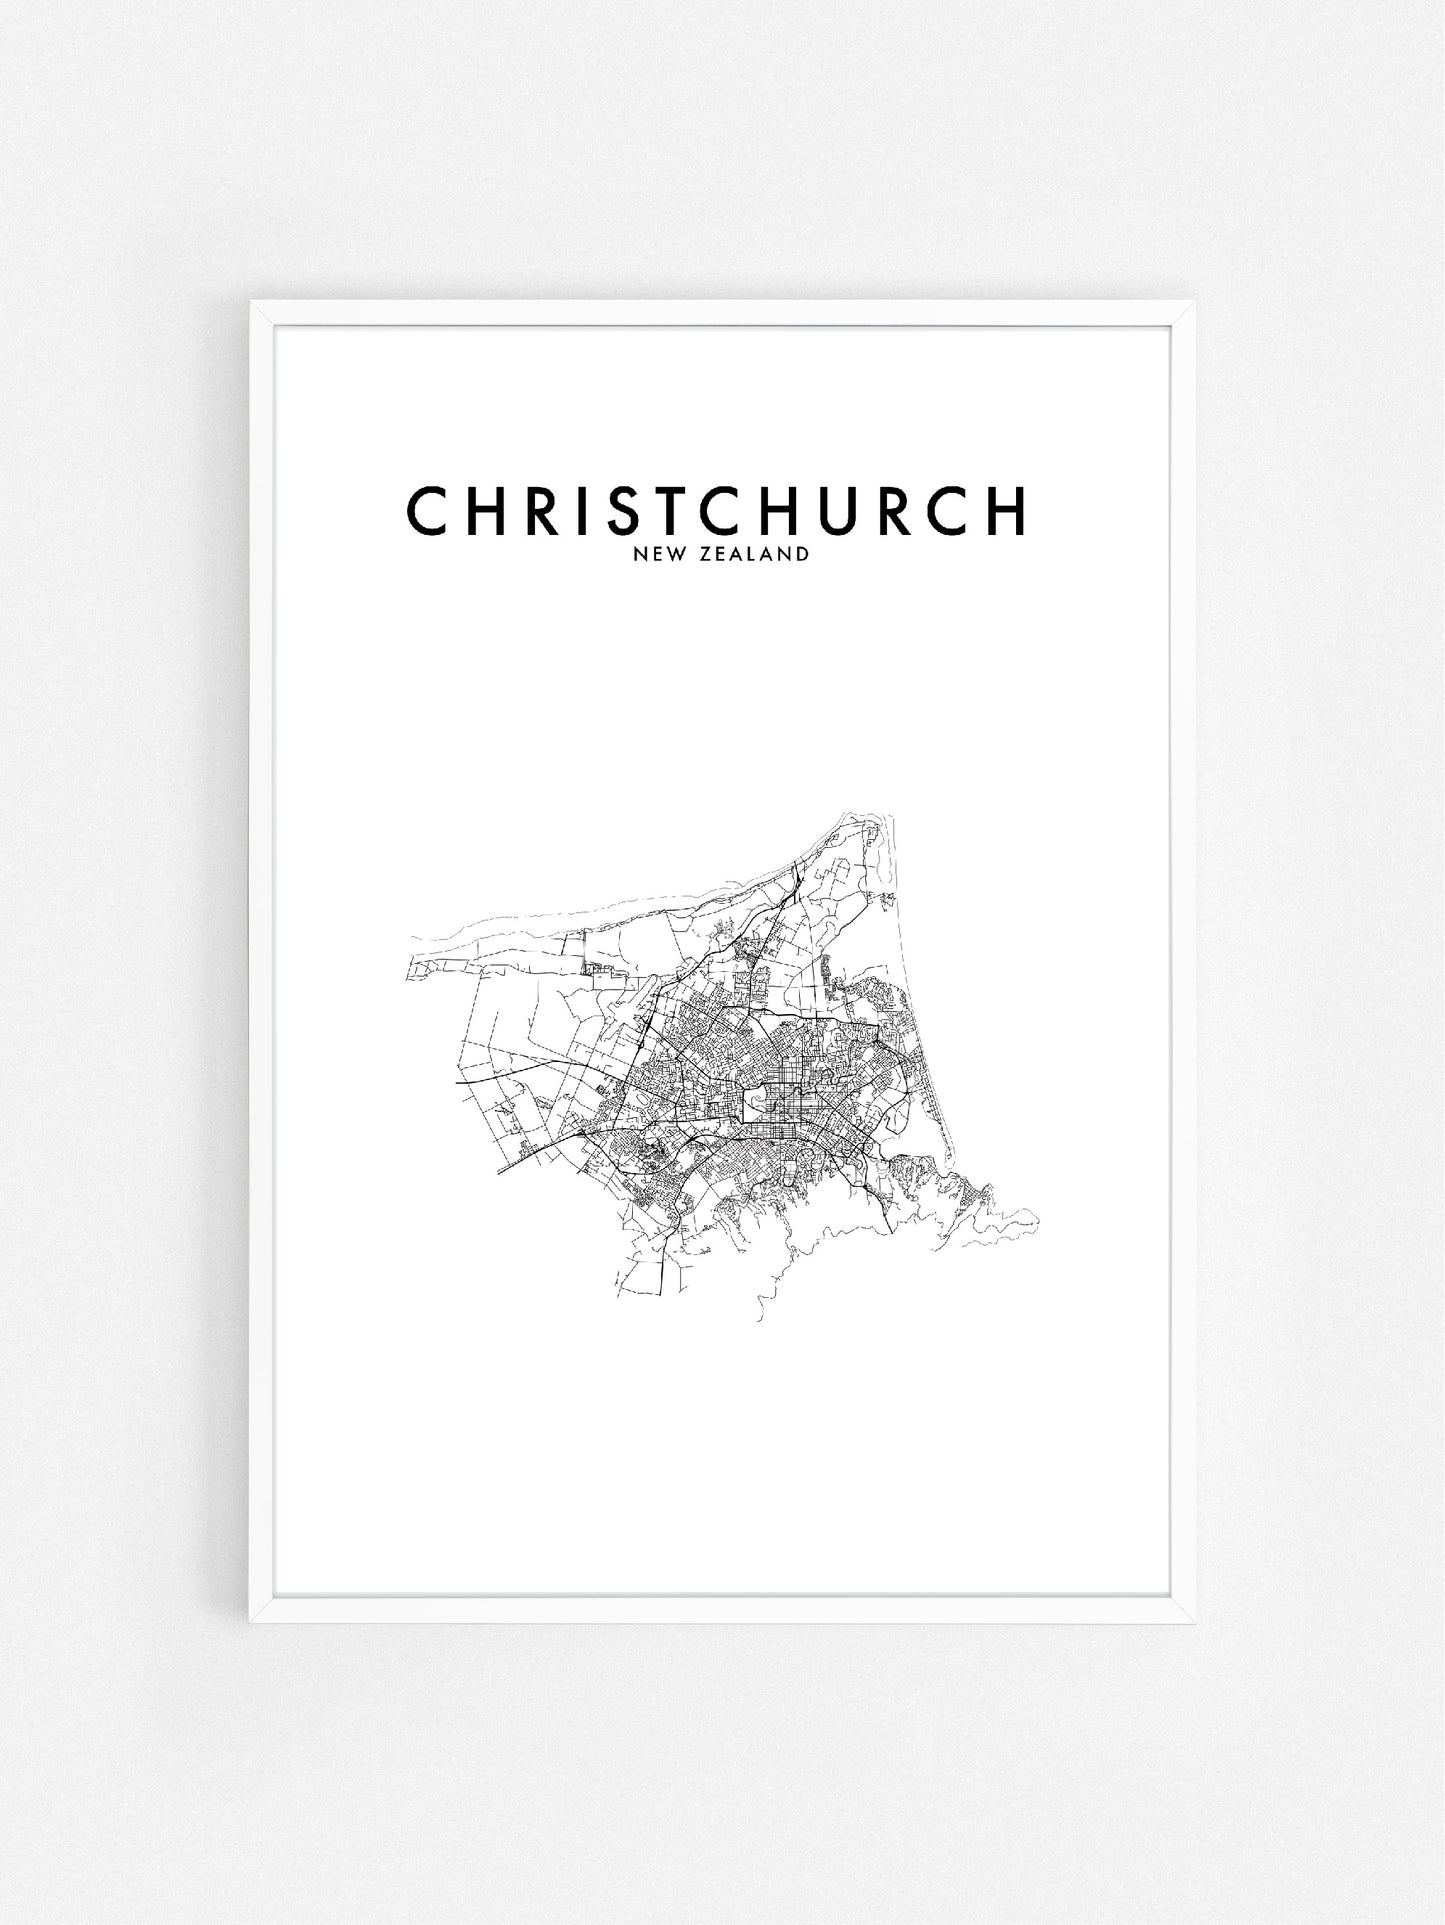 CHRISTCHURCH, NZ HOMETOWN PRINT